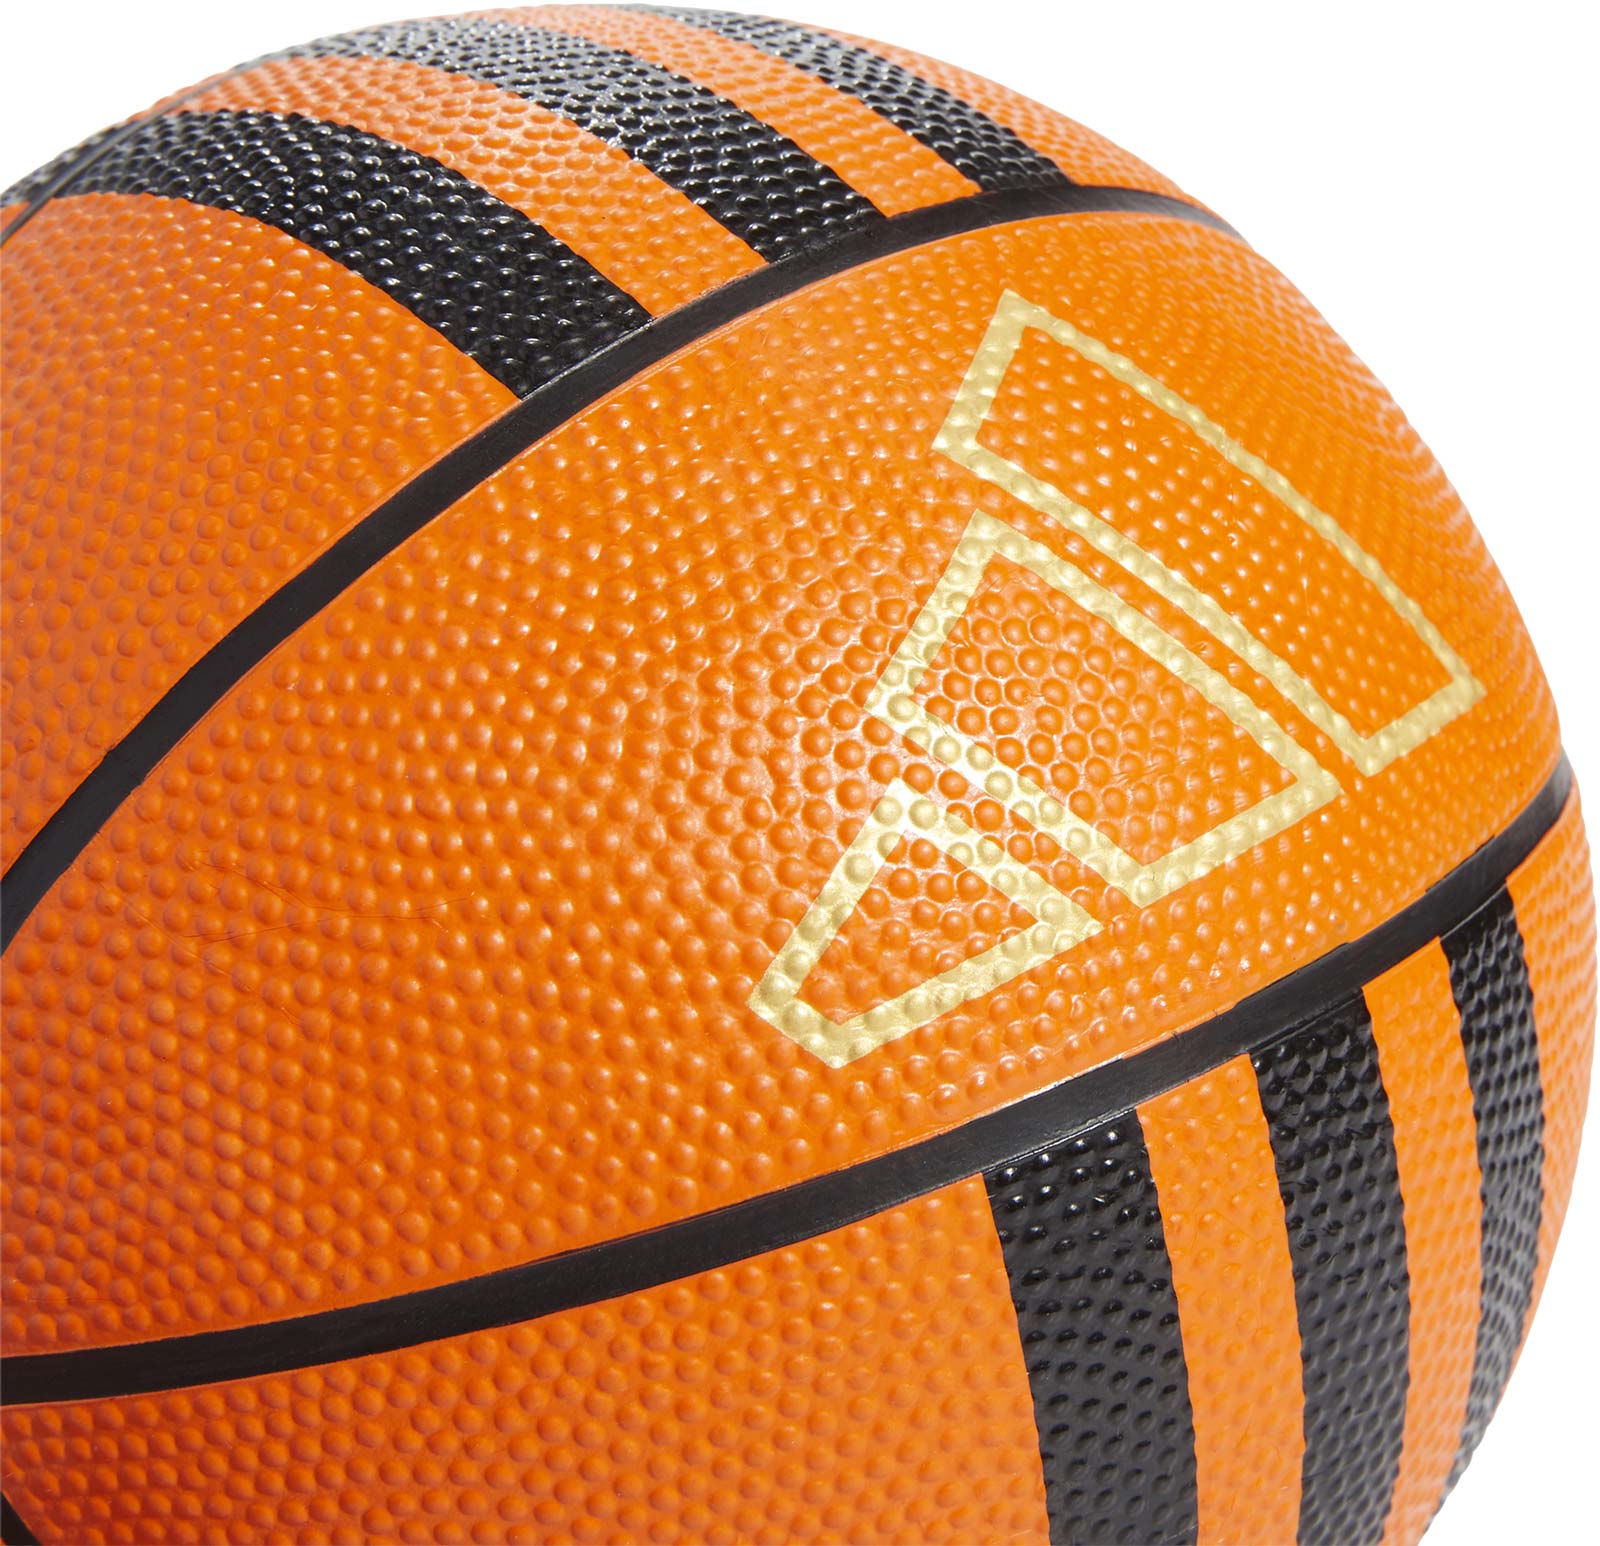 Mini basketbalový míč